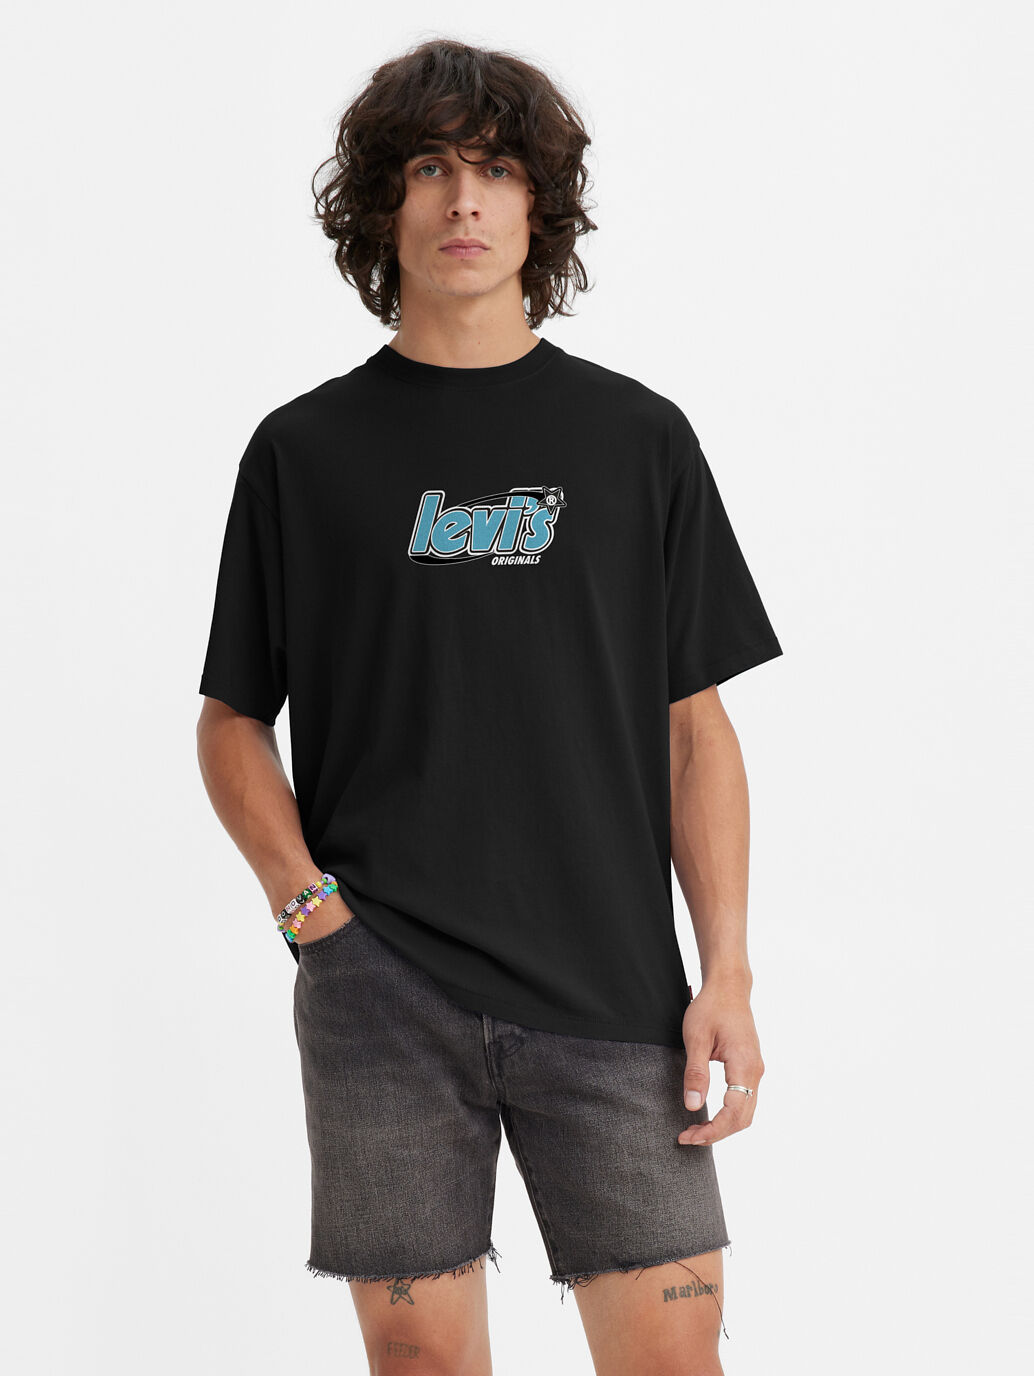 Black Graphic Vintage Fit T-Shirt for Men - 100% Cotton